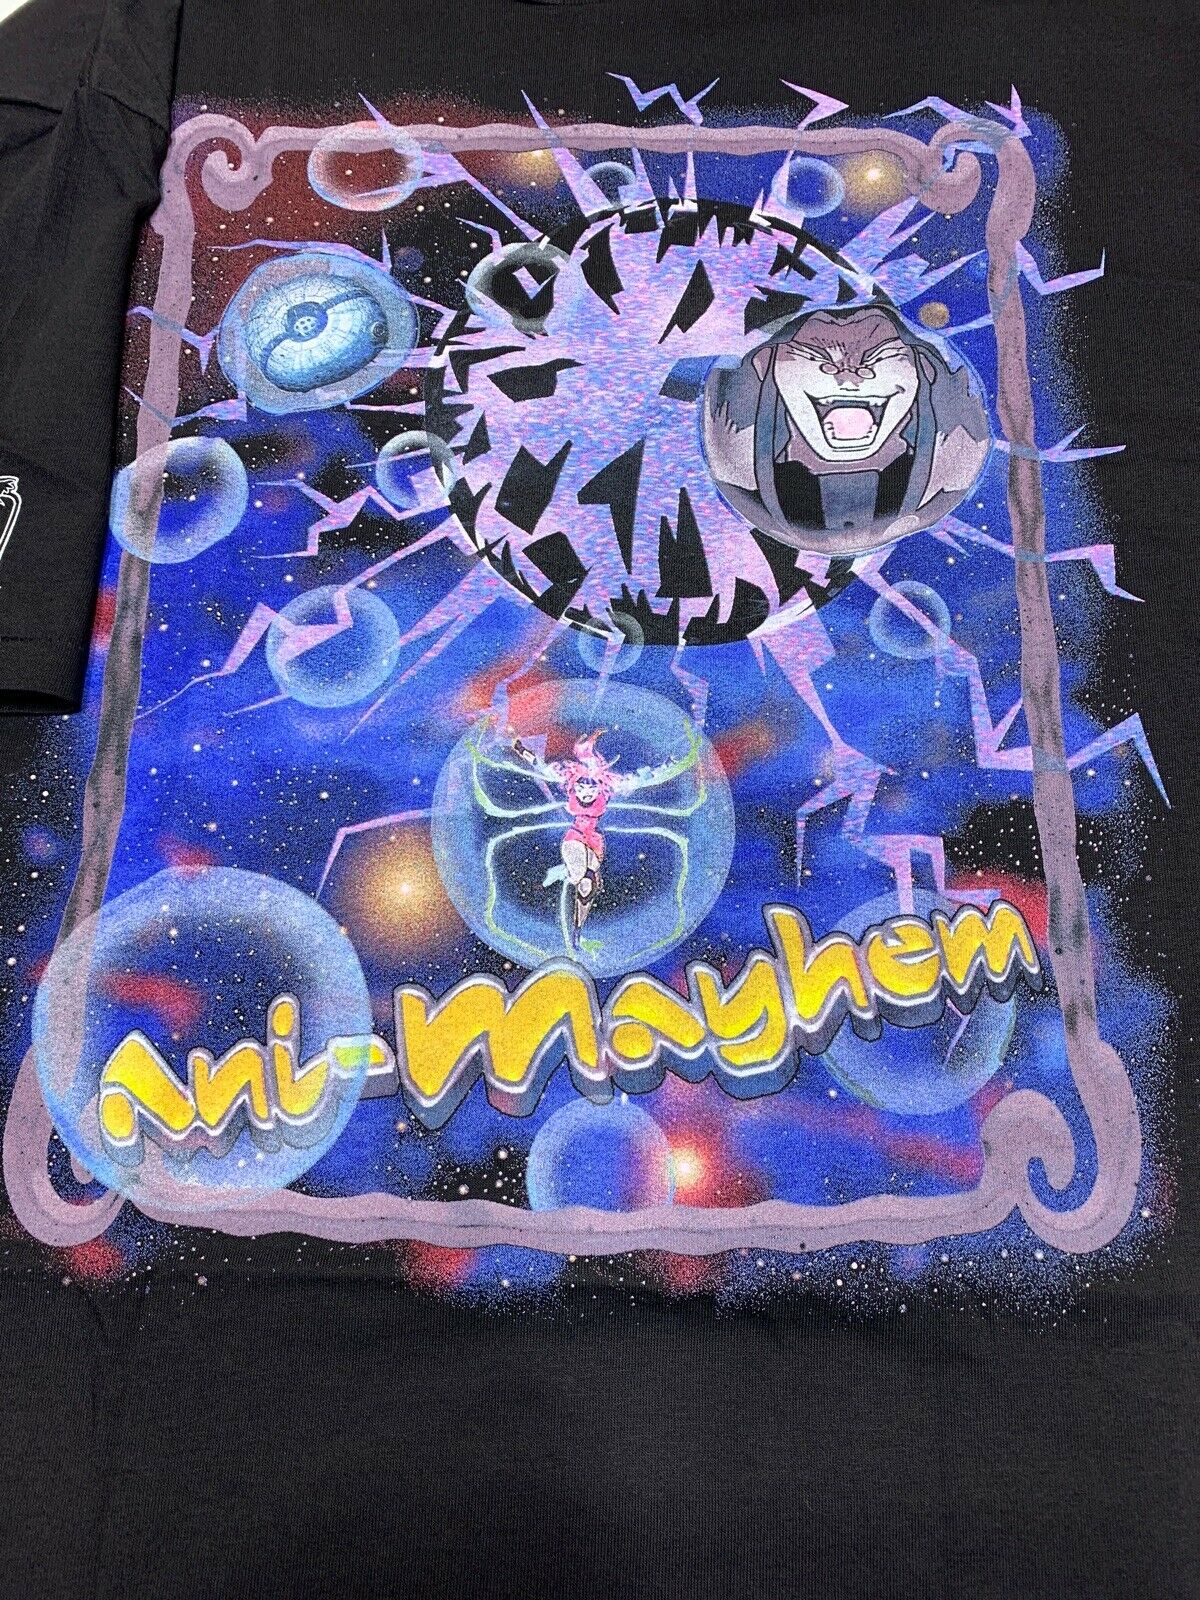 Ani-Mayhem t-shirt